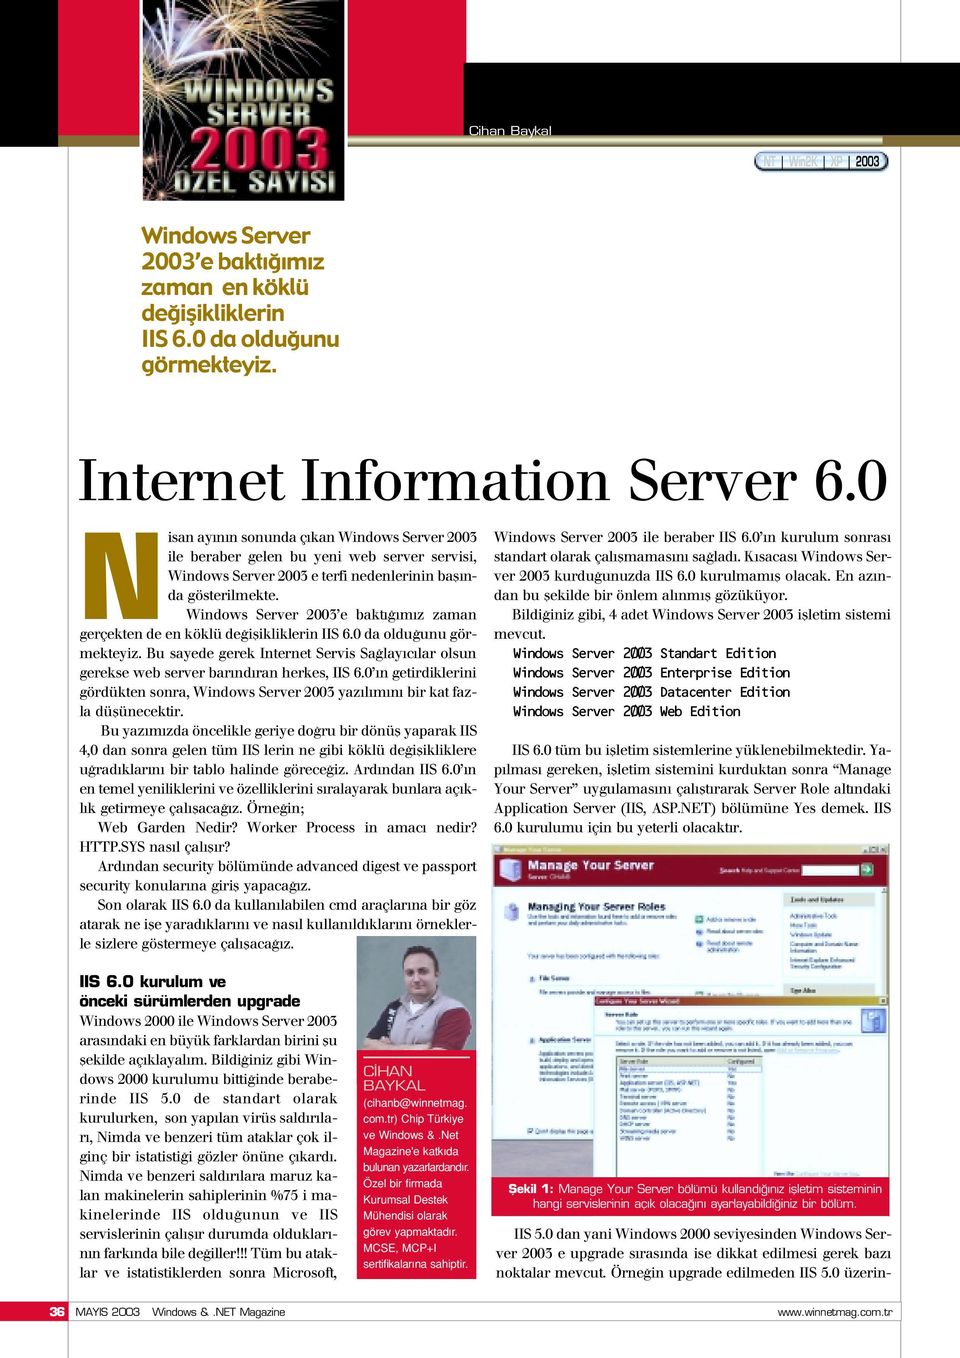 Server 2003 e bakt m z zaman gerçekten de en köklü de iflikliklerin IIS 6.0 da oldu unu görmekteyiz. Bu sayede gerek Internet Servis Sa lay c lar olsun gerekse web server bar nd ran herkes, IIS 6.